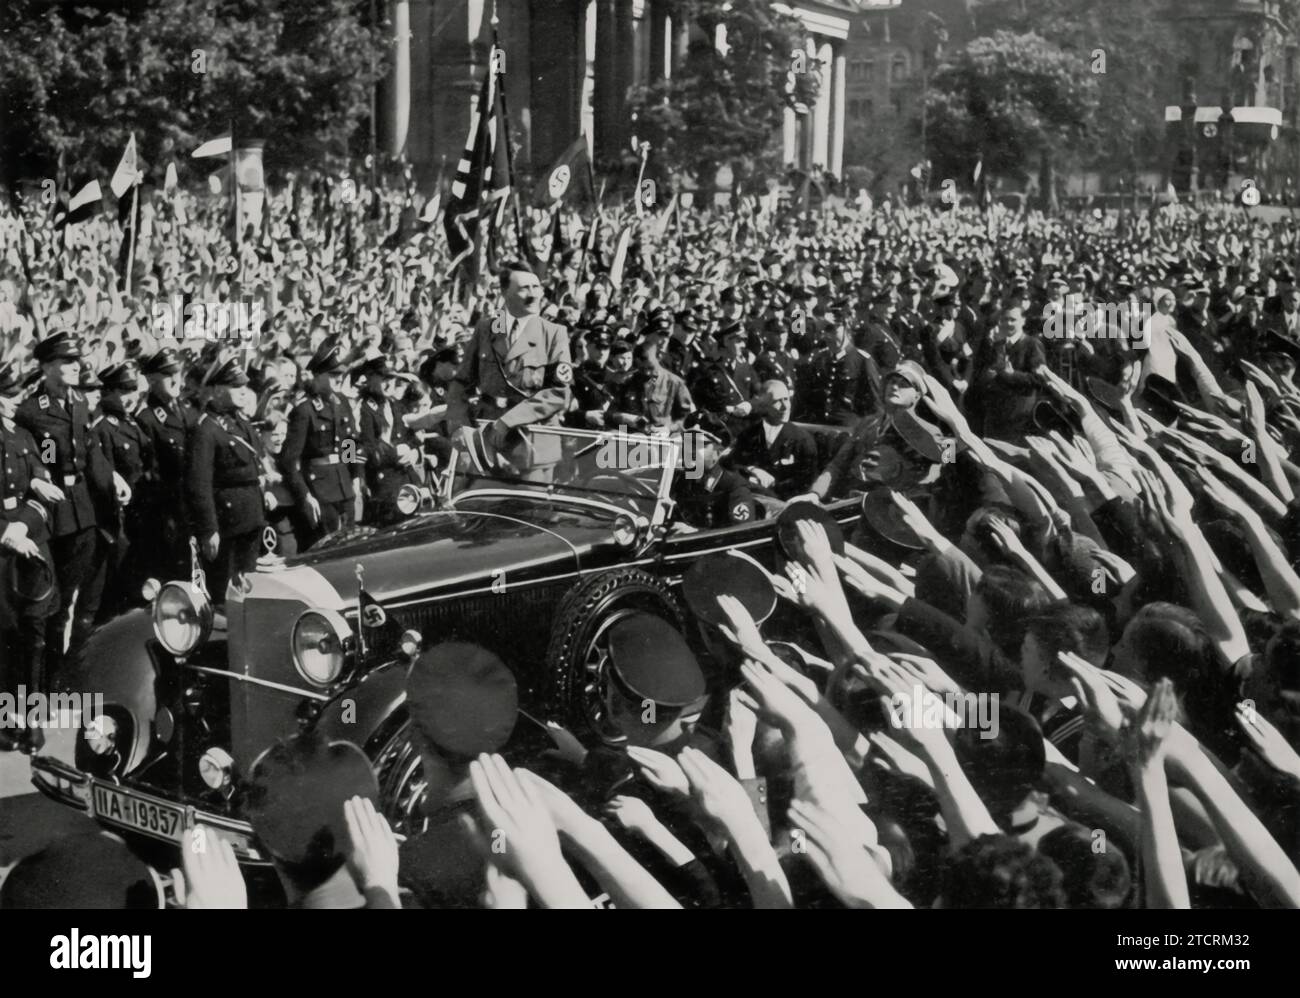 Am Tag der Nationalen Arbeit 1934, nach einer bedeutenden Rede vor den Jugendlichen bei einer Kundgebung im Berliner Lustgarten am 1. Mai, wird Adolf Hitler beim Verlassen der Veranstaltung gesehen. Dieser Anlass war Teil der Feierlichkeiten und Begebenheiten zum Tag der Nationalen Arbeit, einem Tag, an dem das Nazi-Regime seine ideale auf Arbeit und nationale Gemeinschaft propagierte. Hitlers Ansprache an die Jugend, ein wichtiges Zielpublikum für Nazi-Propaganda, war bedeutend, um die Werte und Ideologien des Regimes zu verankern. Stockfoto